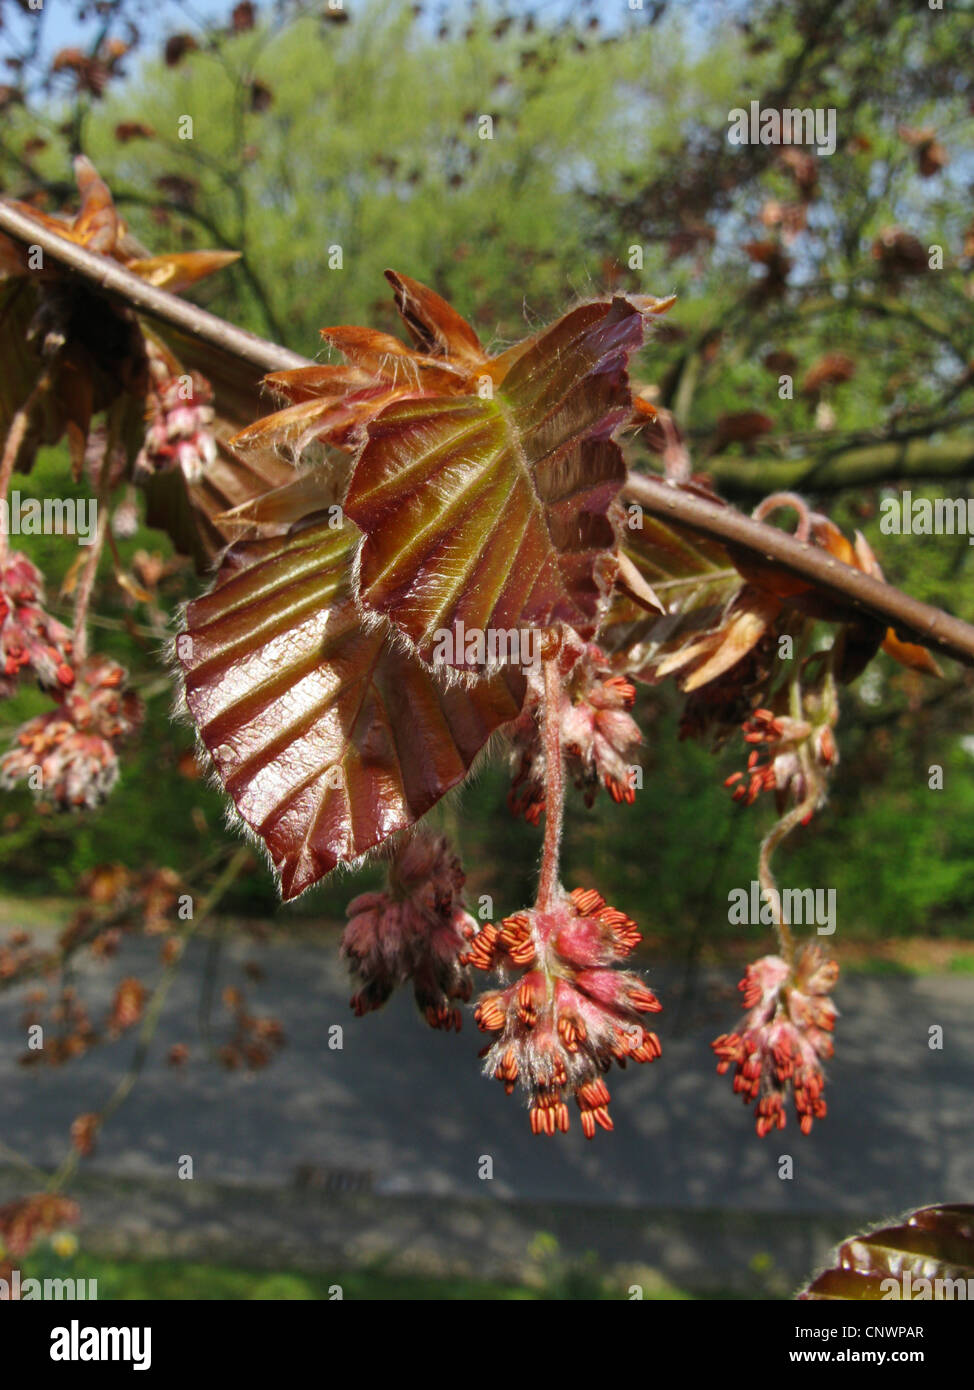 copper beech (Fagus sylvatica var. purpurea, Fagus sylvatica 'Atropunicea', Fagus sylvatica Atropunicea), male inflorescences, Germany Stock Photo